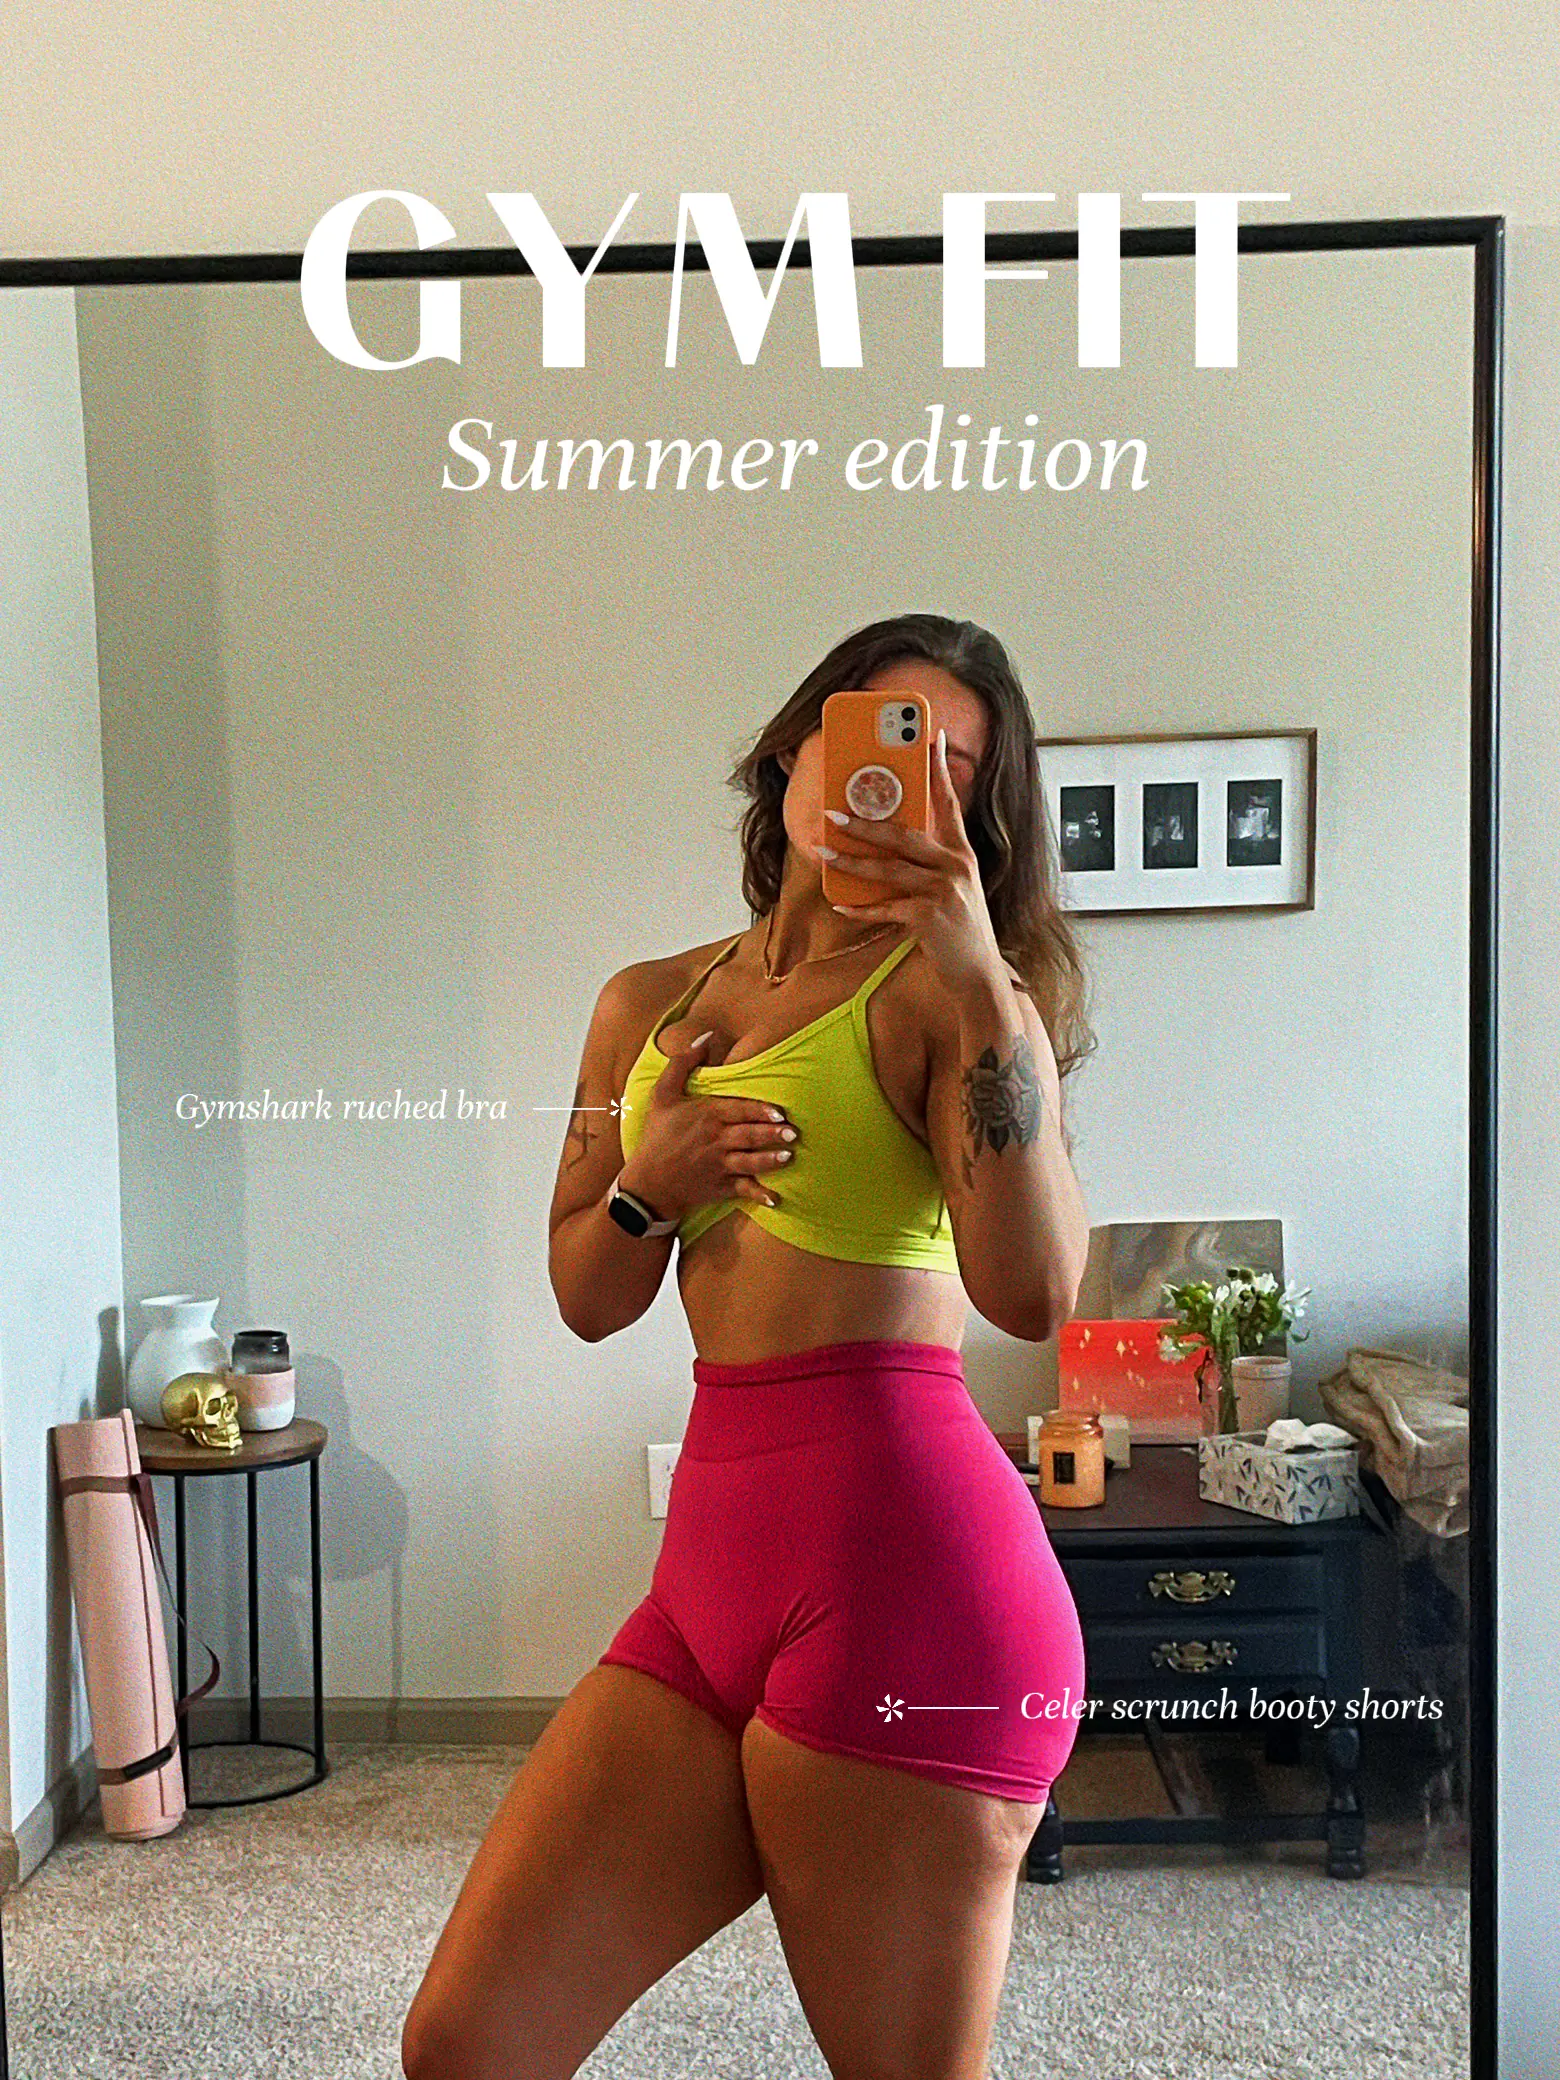 Gymshark Womens Training Sweat Shorts - Yellow – Start Fitness